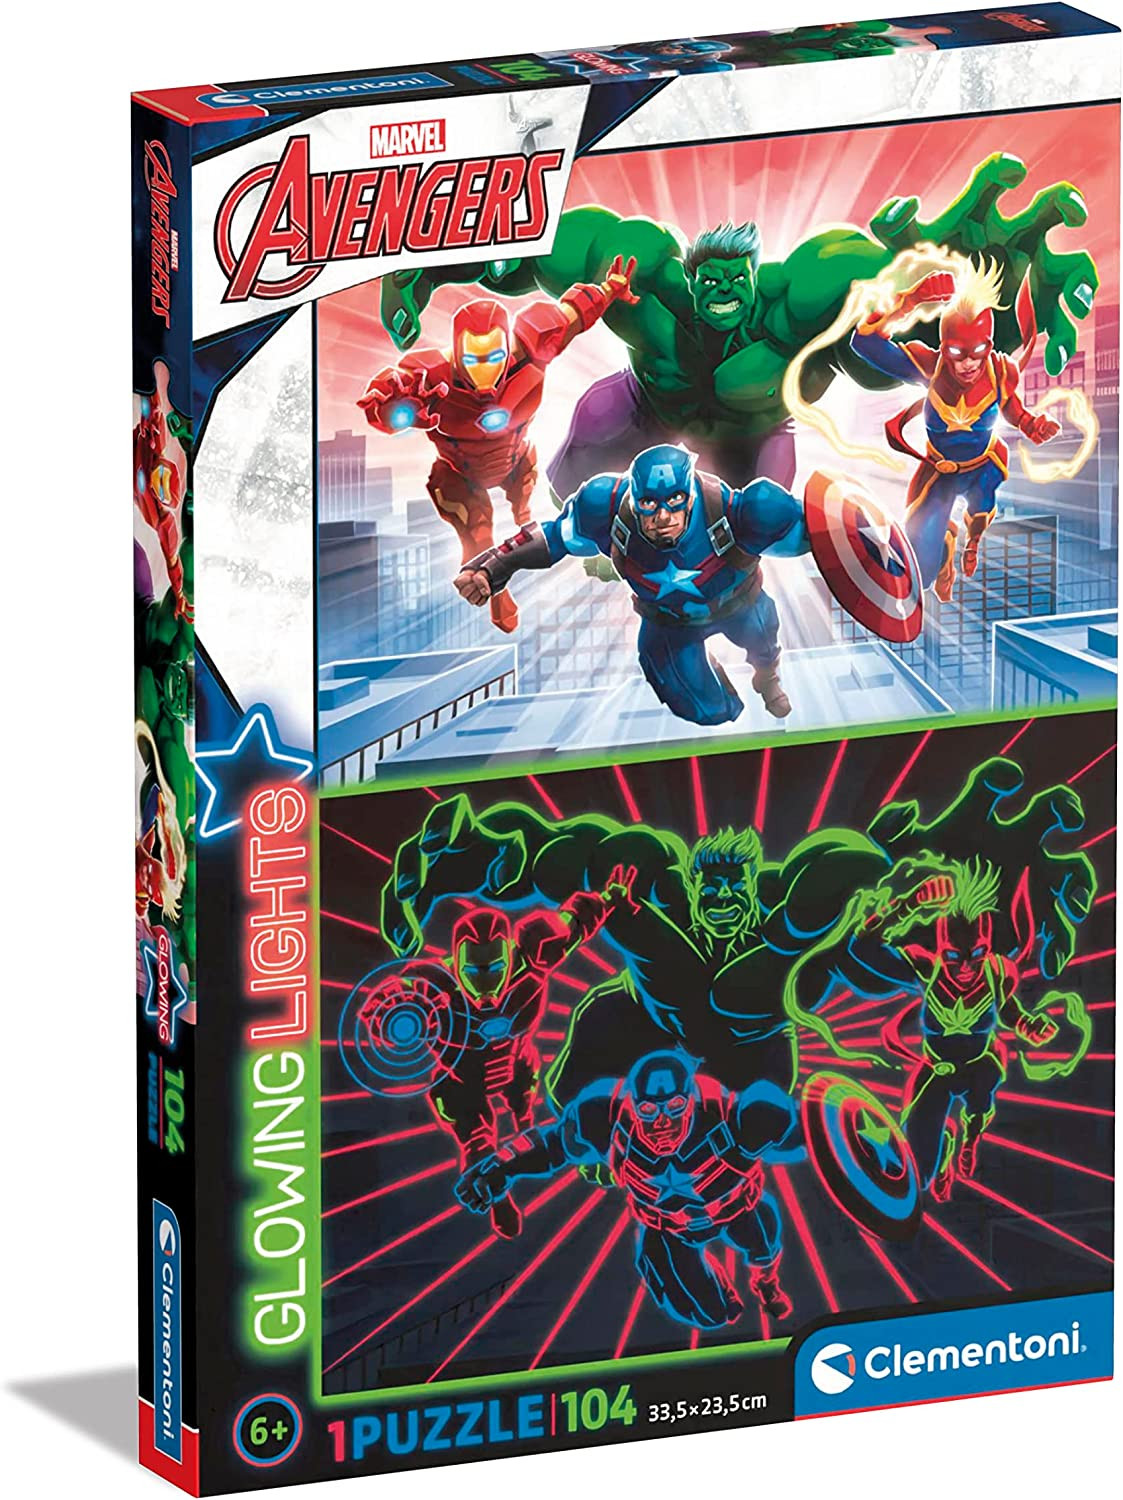 Wolk Handschrift Mening Clementoni-Marvel Avengers gloeiende lichten verzameling Avengers-104  stukken, 6 jaar oud, fluorescerende puzzel-evil in Italië, 27554,  multicolor Beschadigde Verpakking